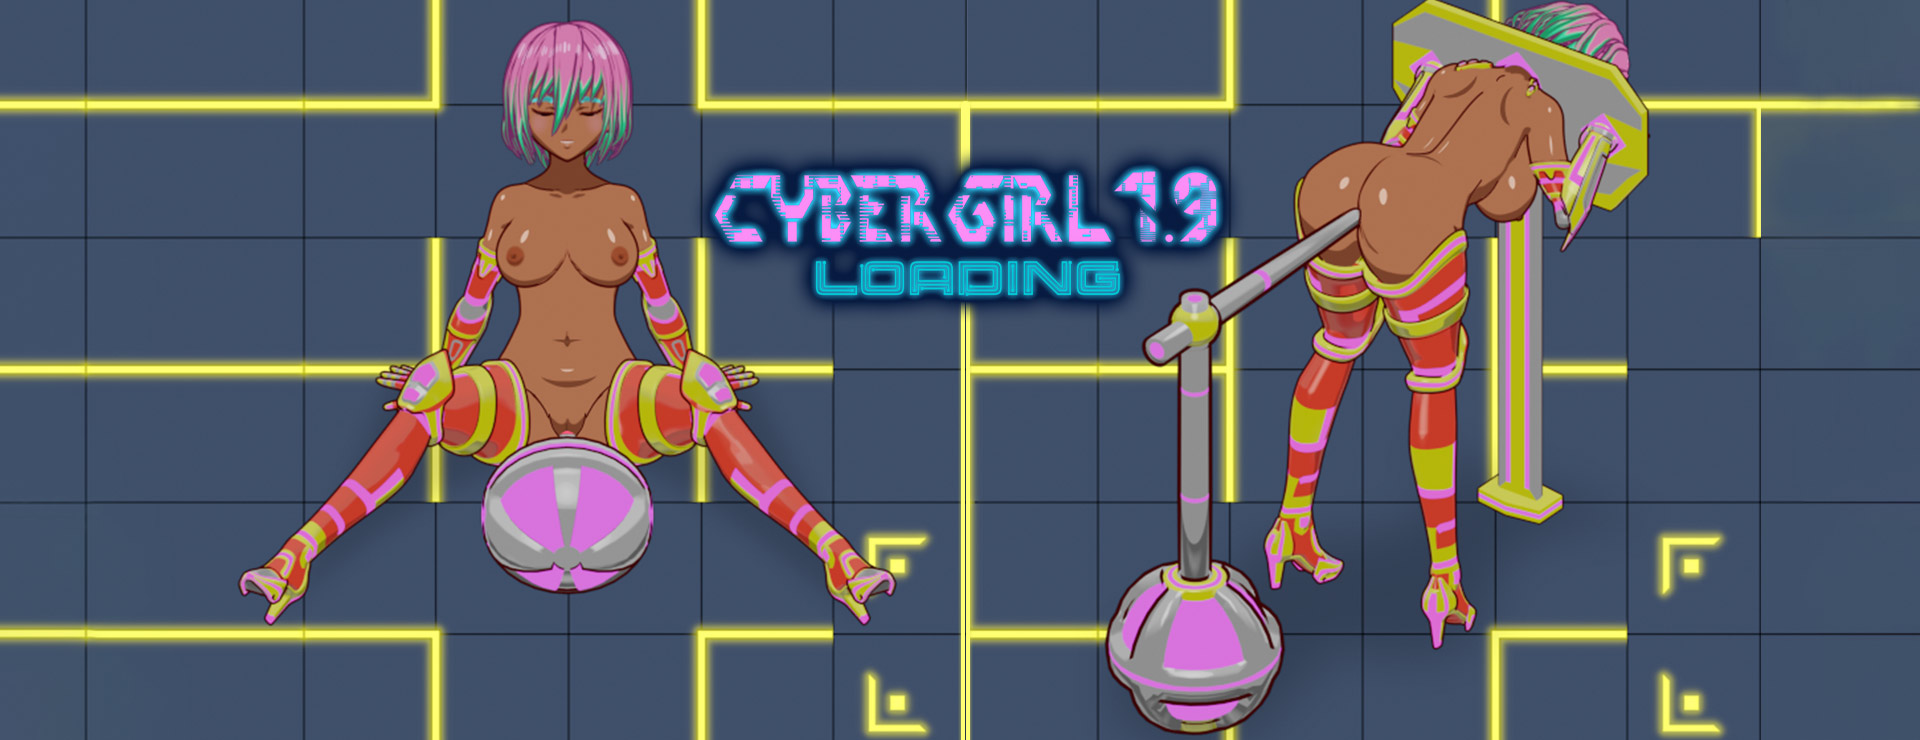 Cyber Girl 1.9 LOADING - アクションアドベンチャー ゲーム